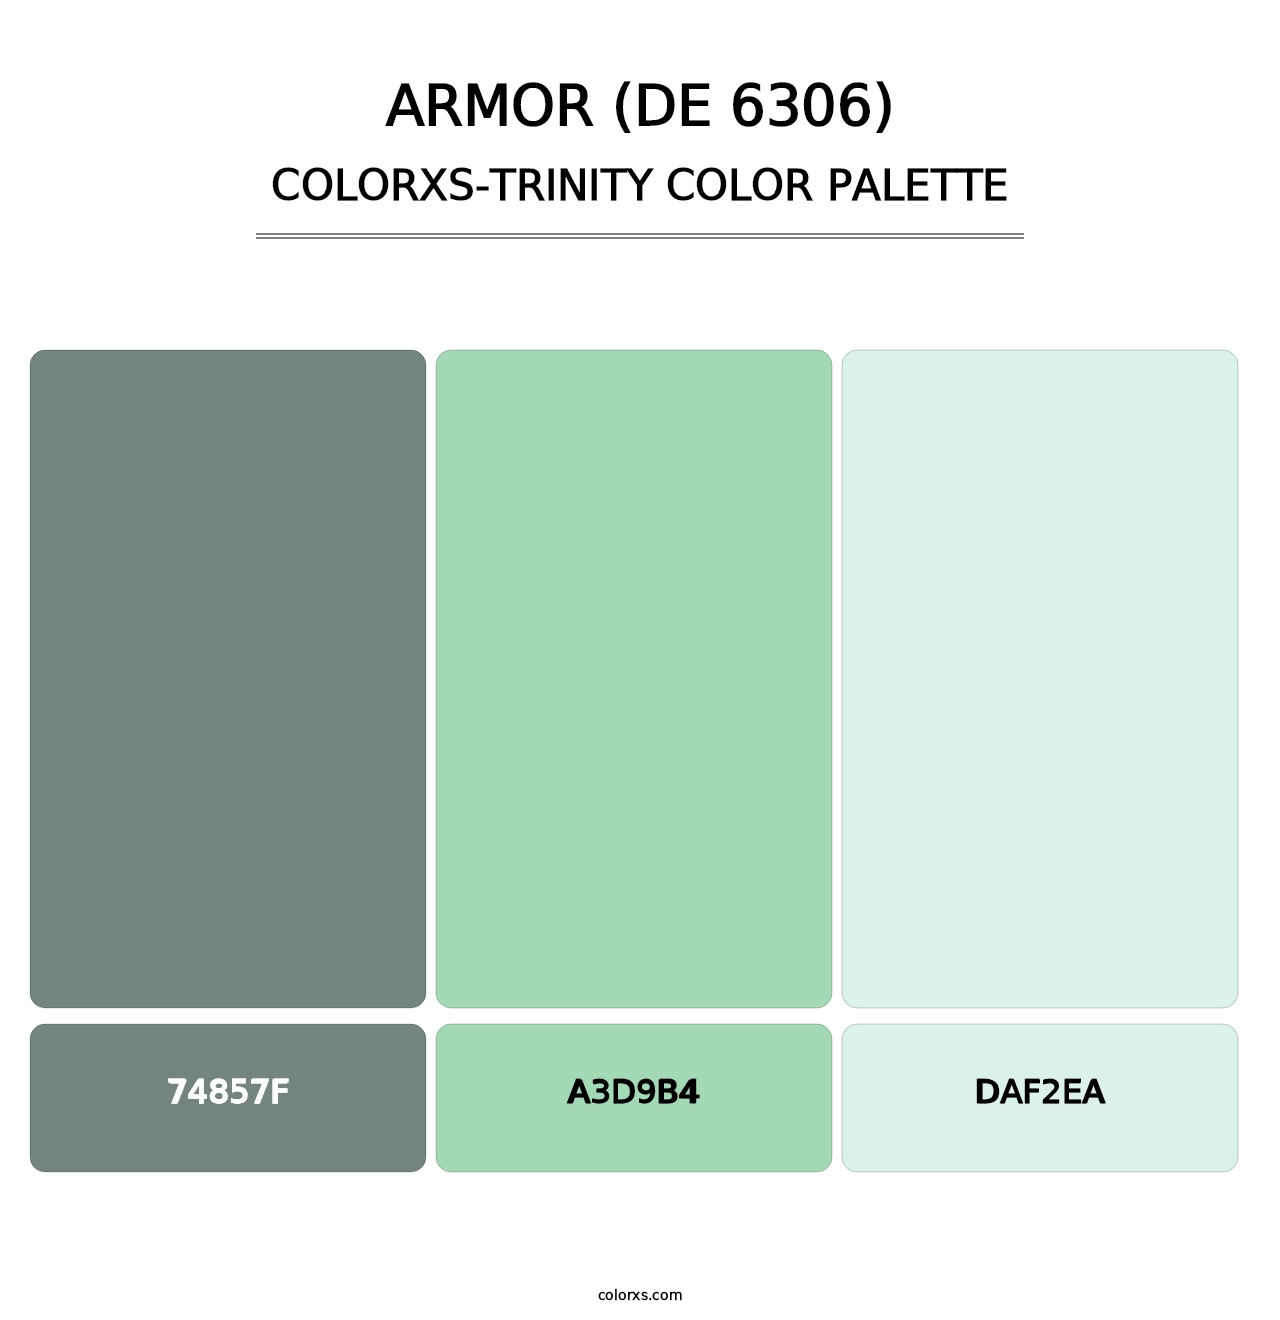 Armor (DE 6306) - Colorxs Trinity Palette